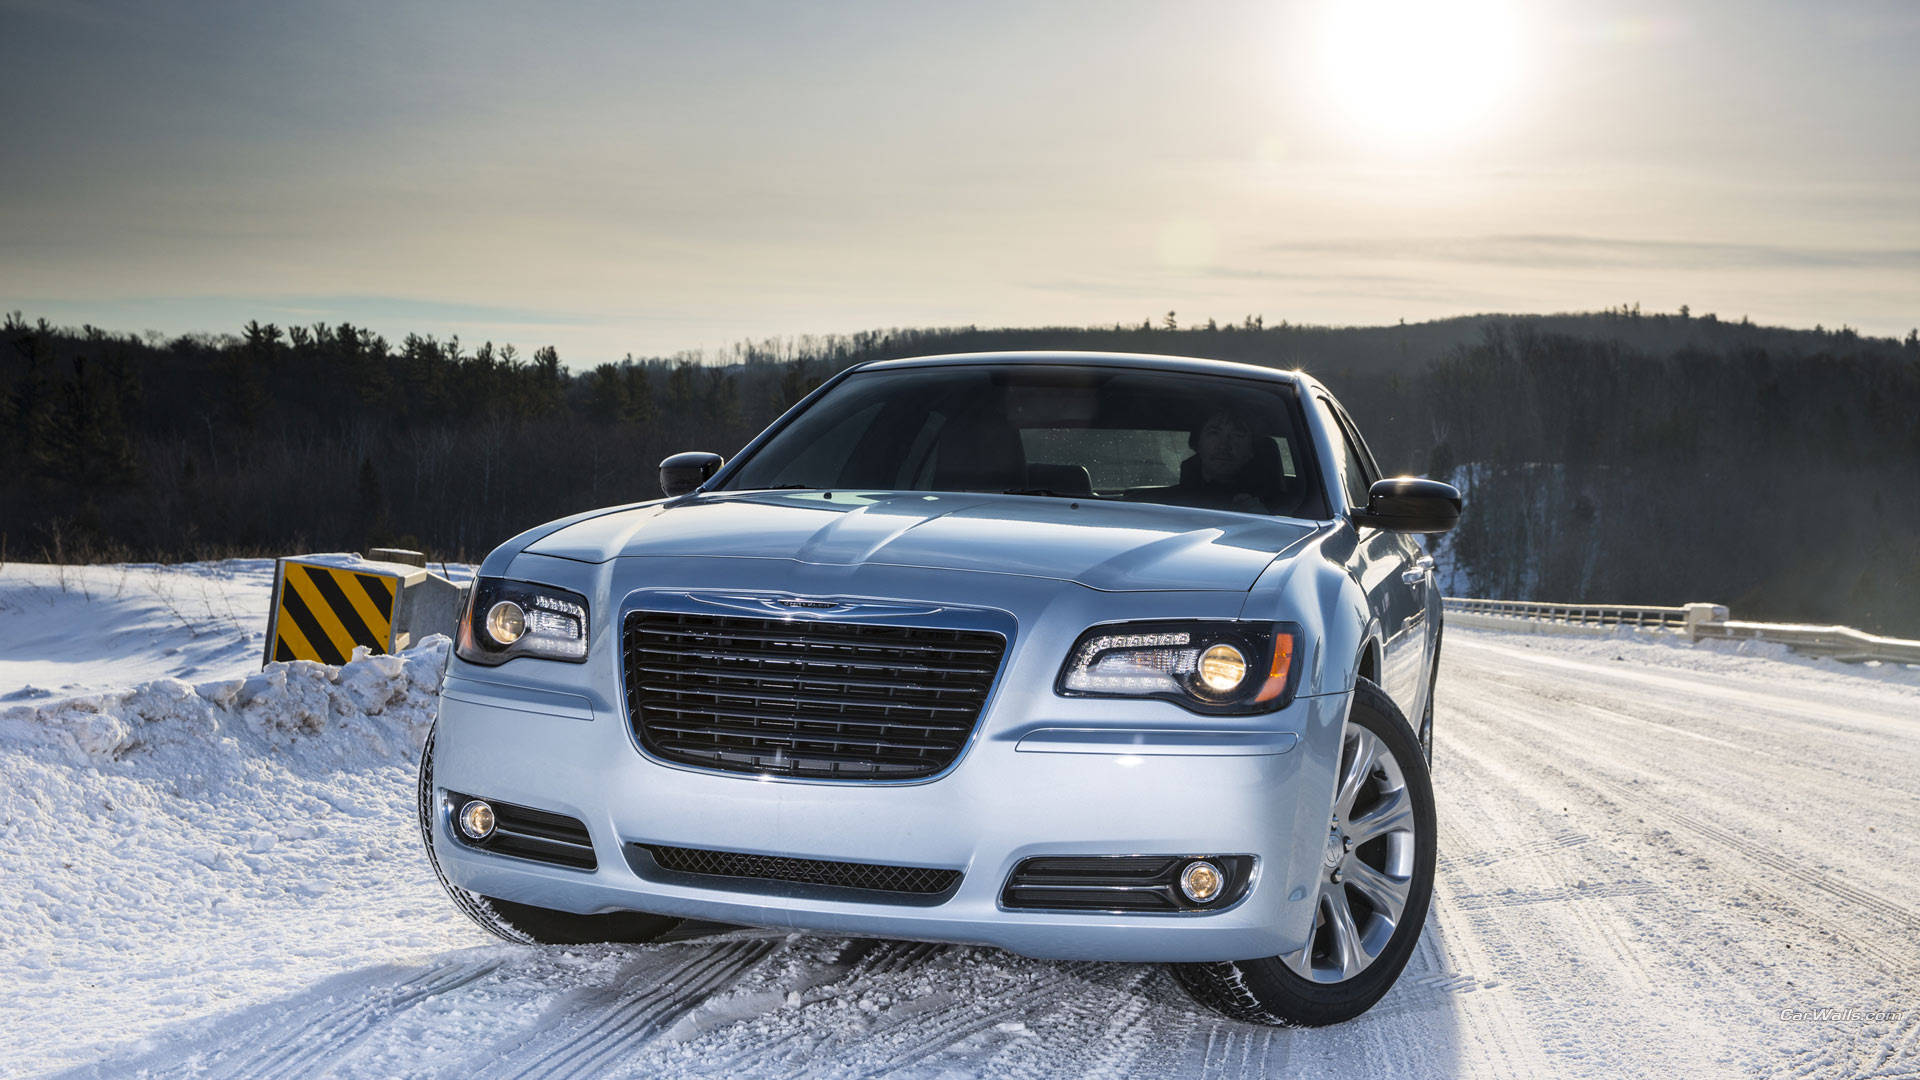 2013 Chrysler 300 Background